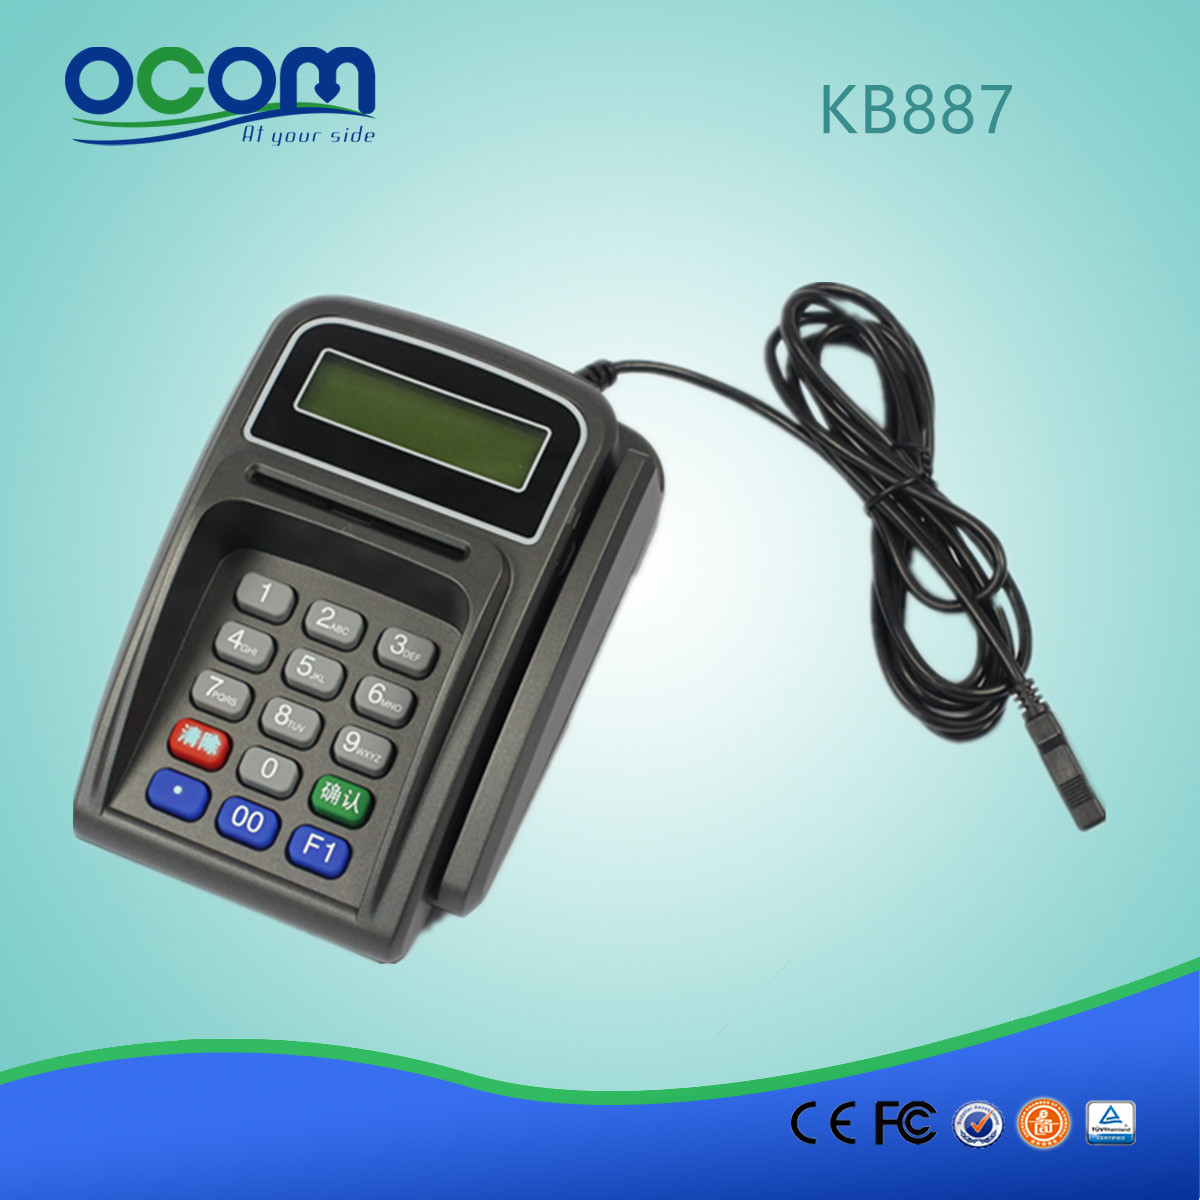 Mini πληκτρολόγιο με αναγνώστη Smart Card και αναγνώστη μαγνητικών καρτών KB887